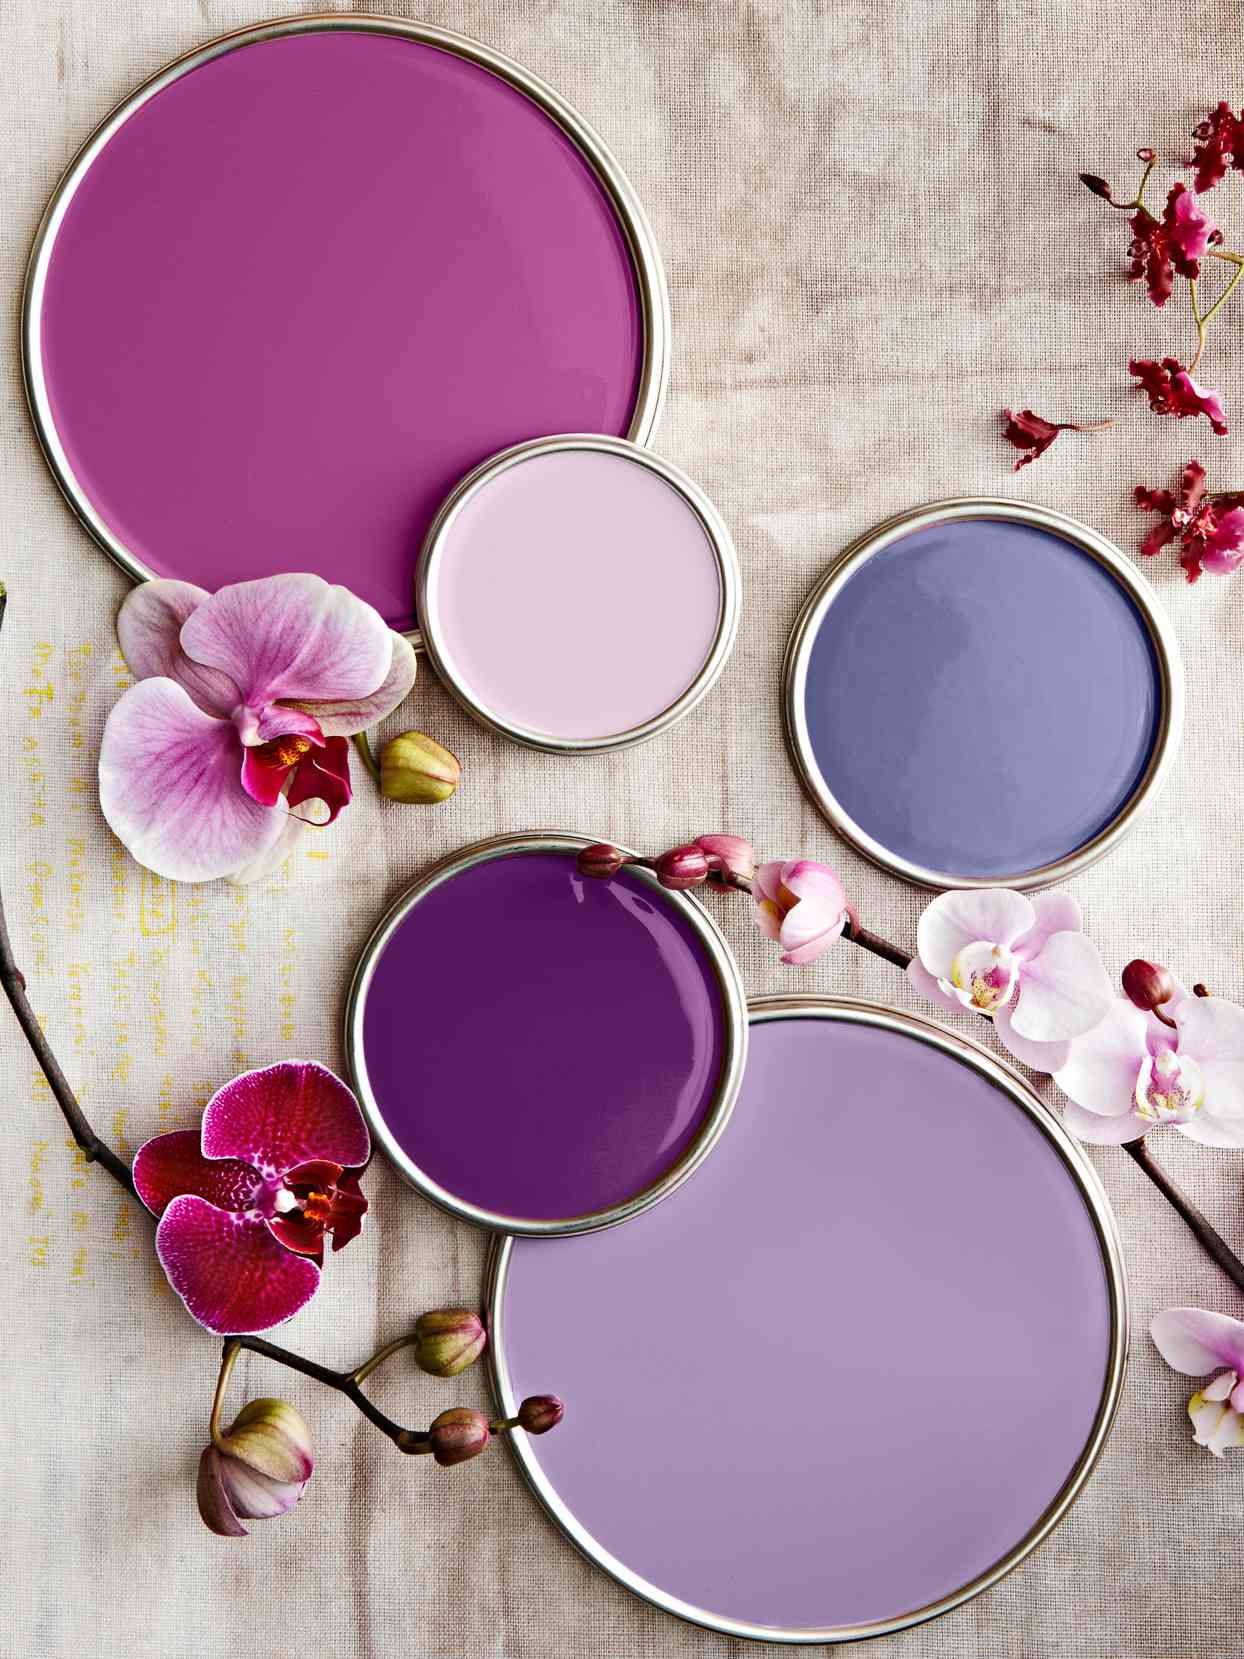 Popular Purple Paint Colors